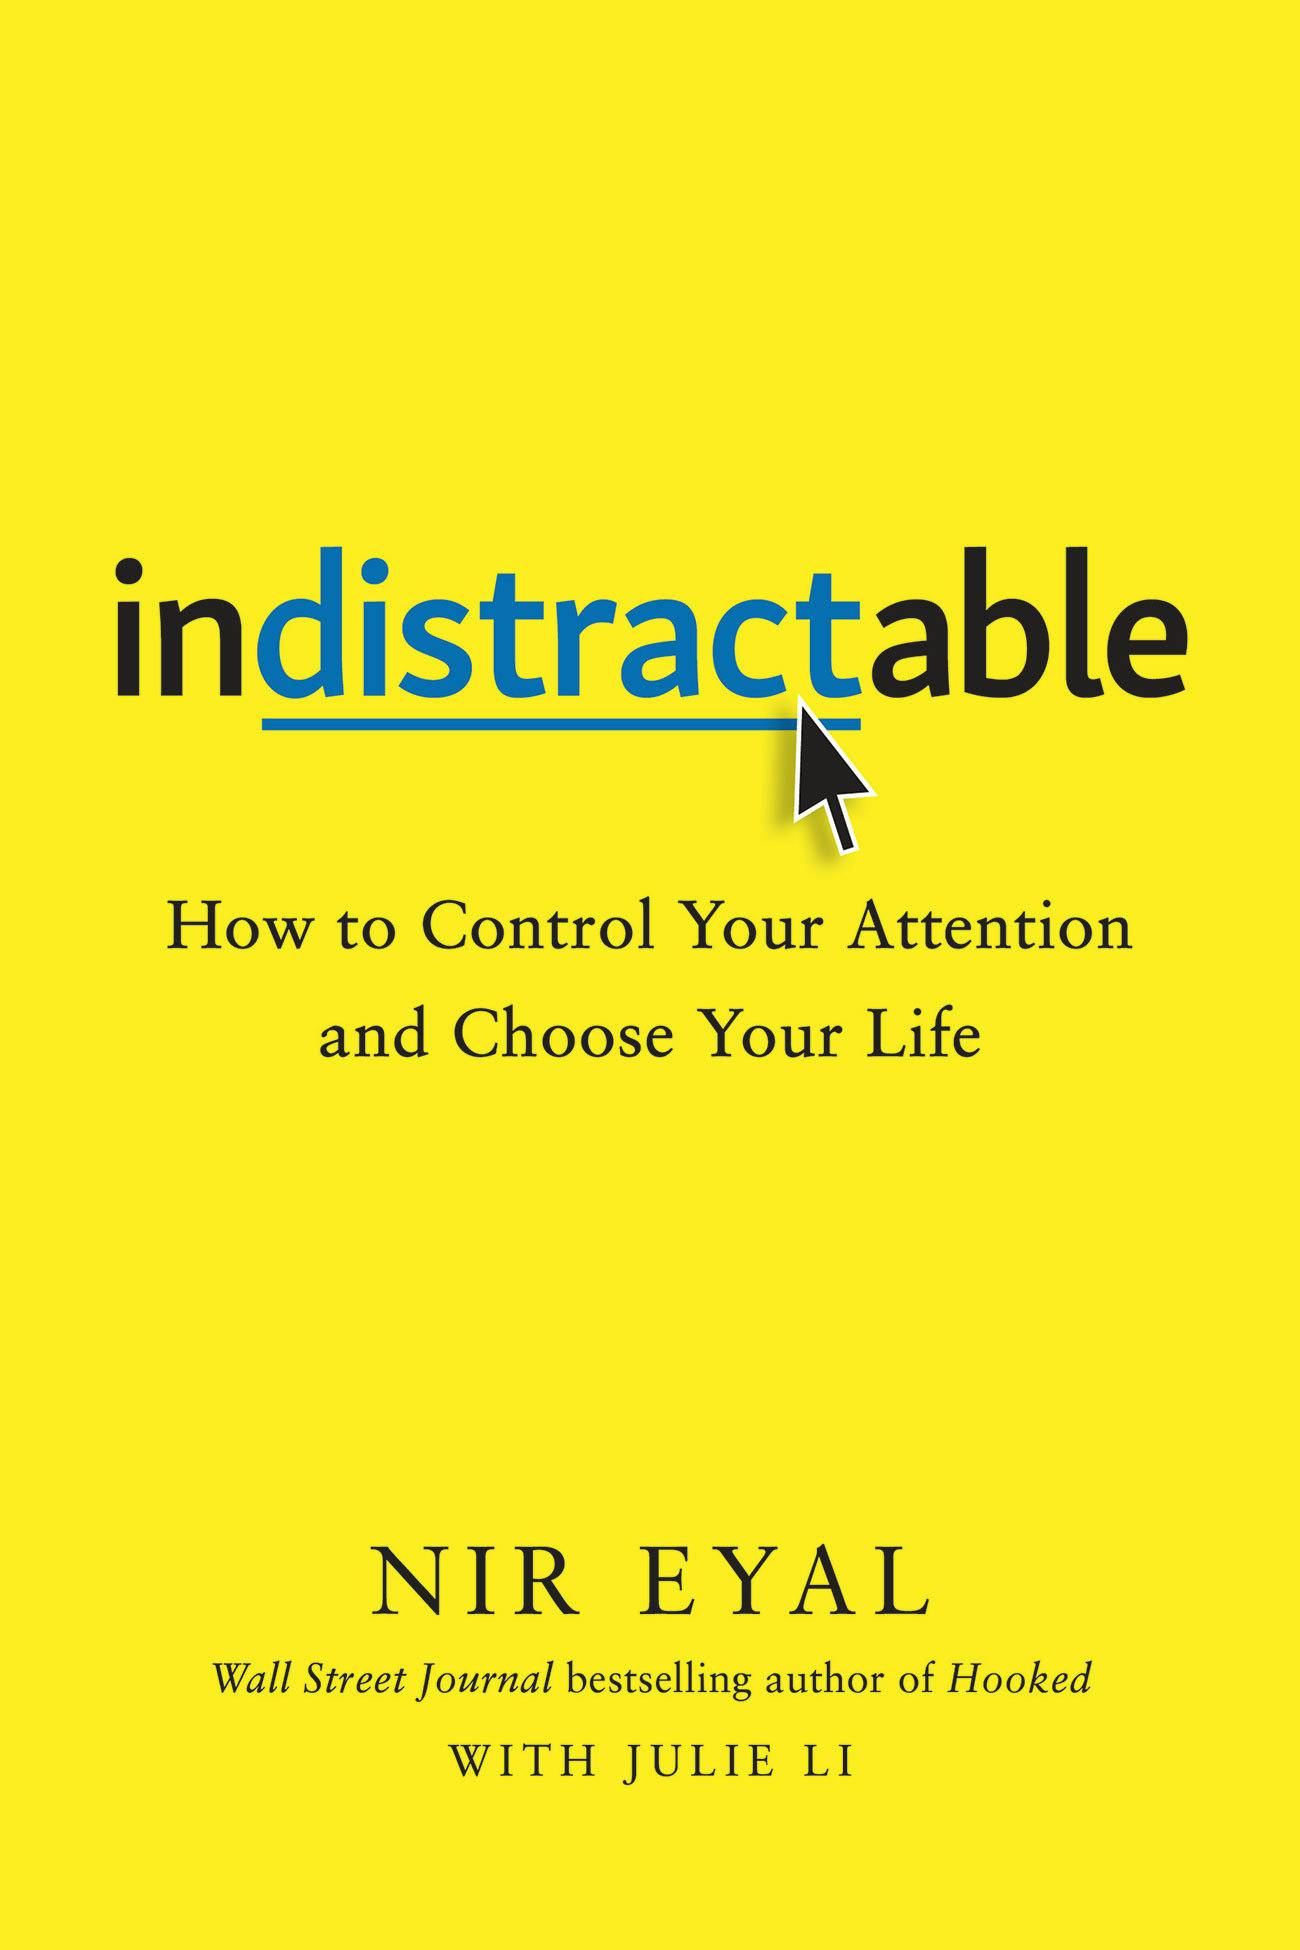 "Indistractable" by "Nir Eyal, Julie Li"